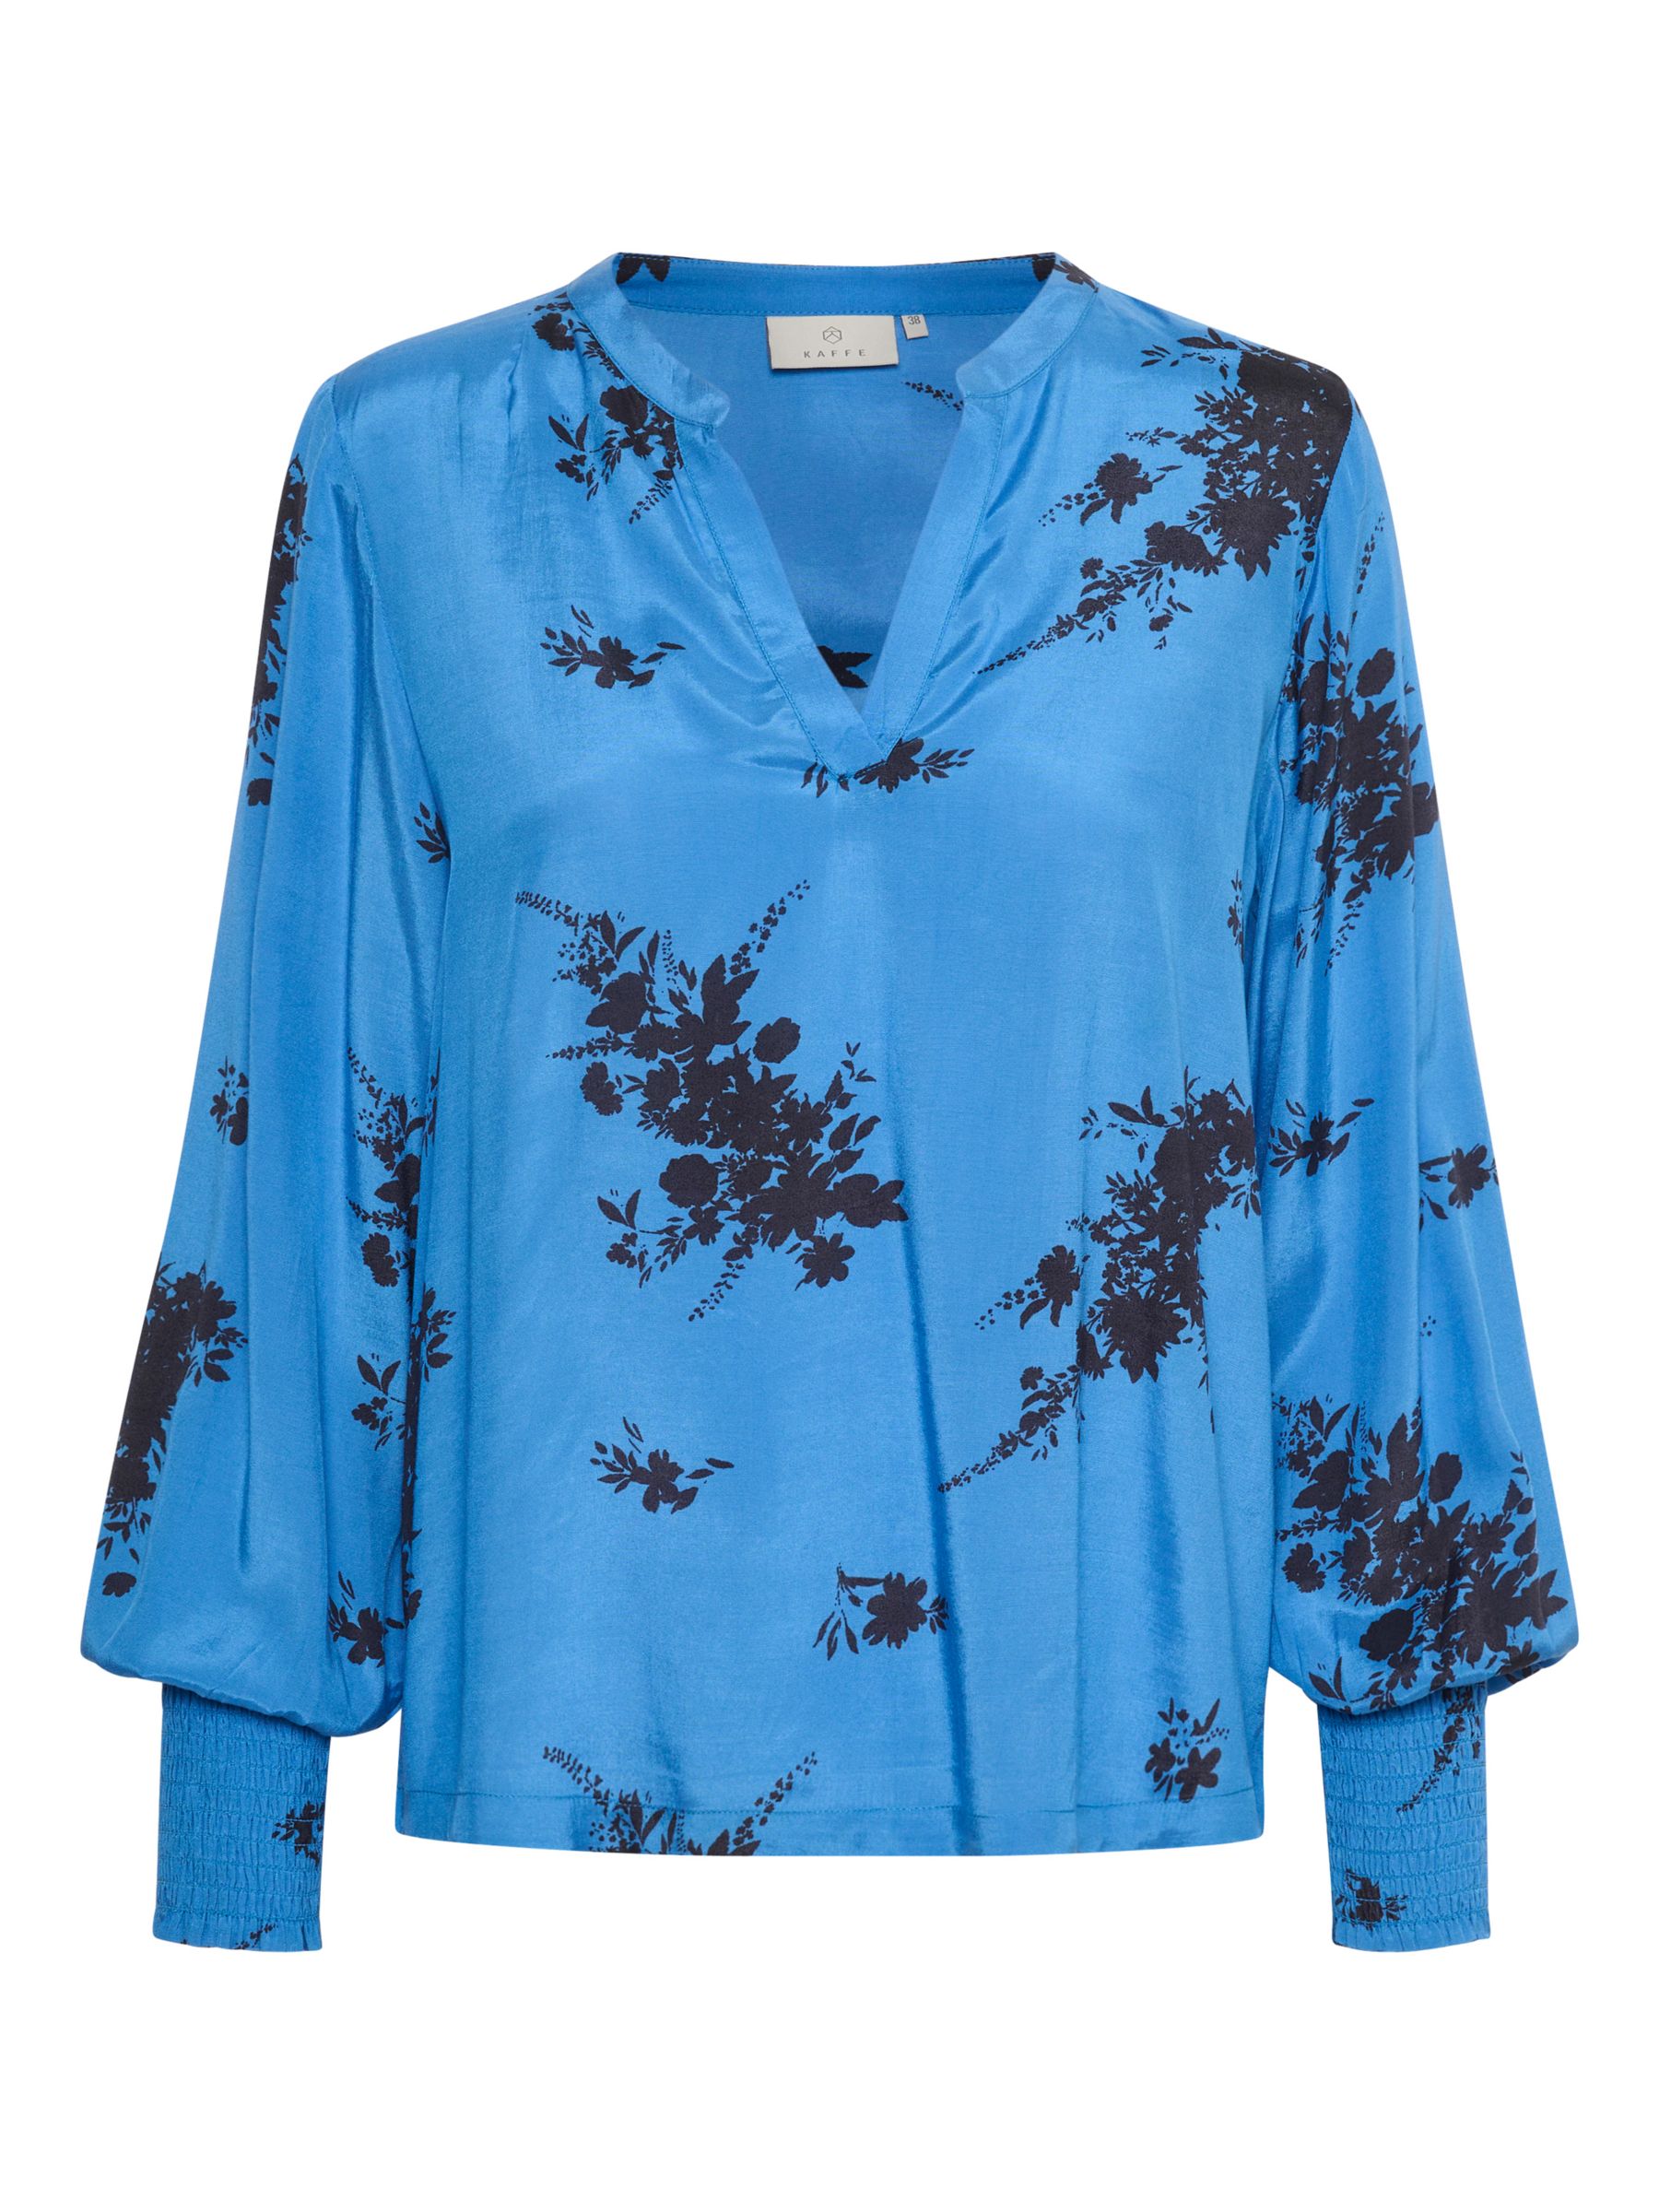 Buy KAFFE Gilla Floral Long Sleeve Blouse, Regatta/Black Online at johnlewis.com